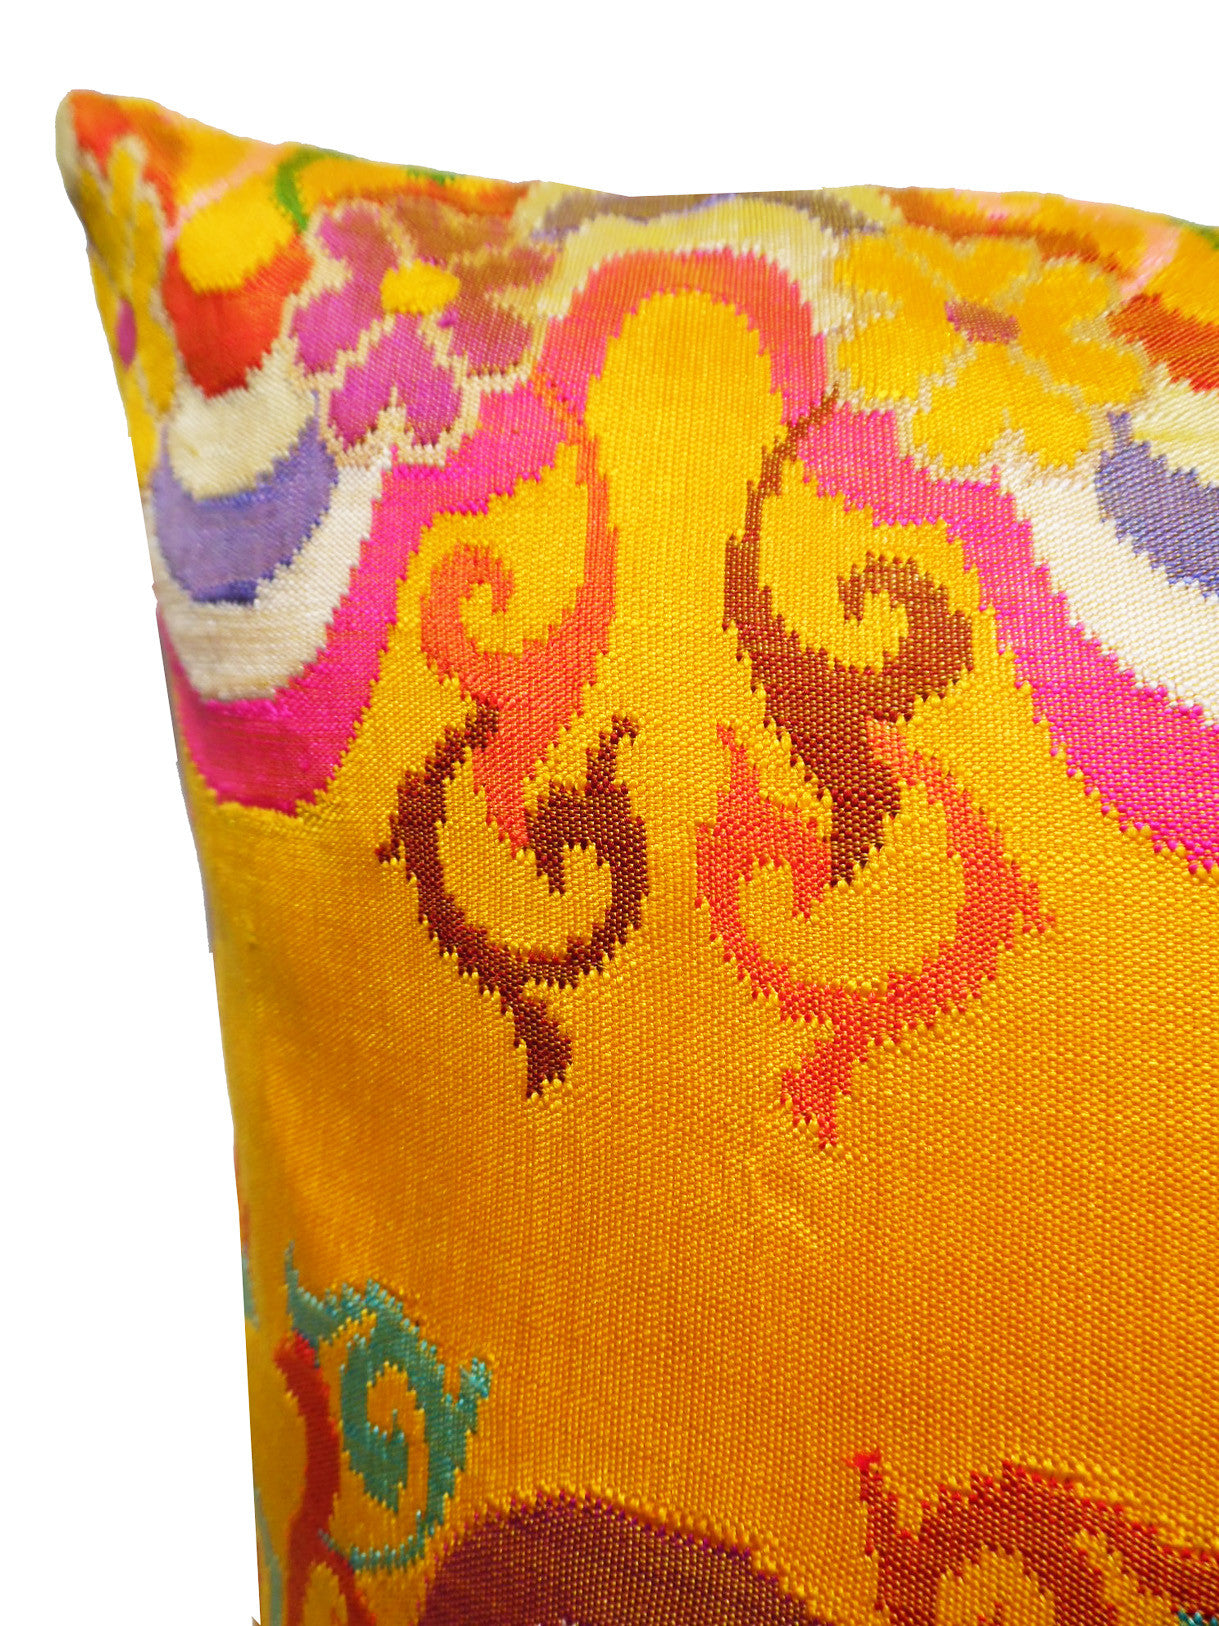 Pillow Hand Woven Burmese 10 Ply Saffron Scroll